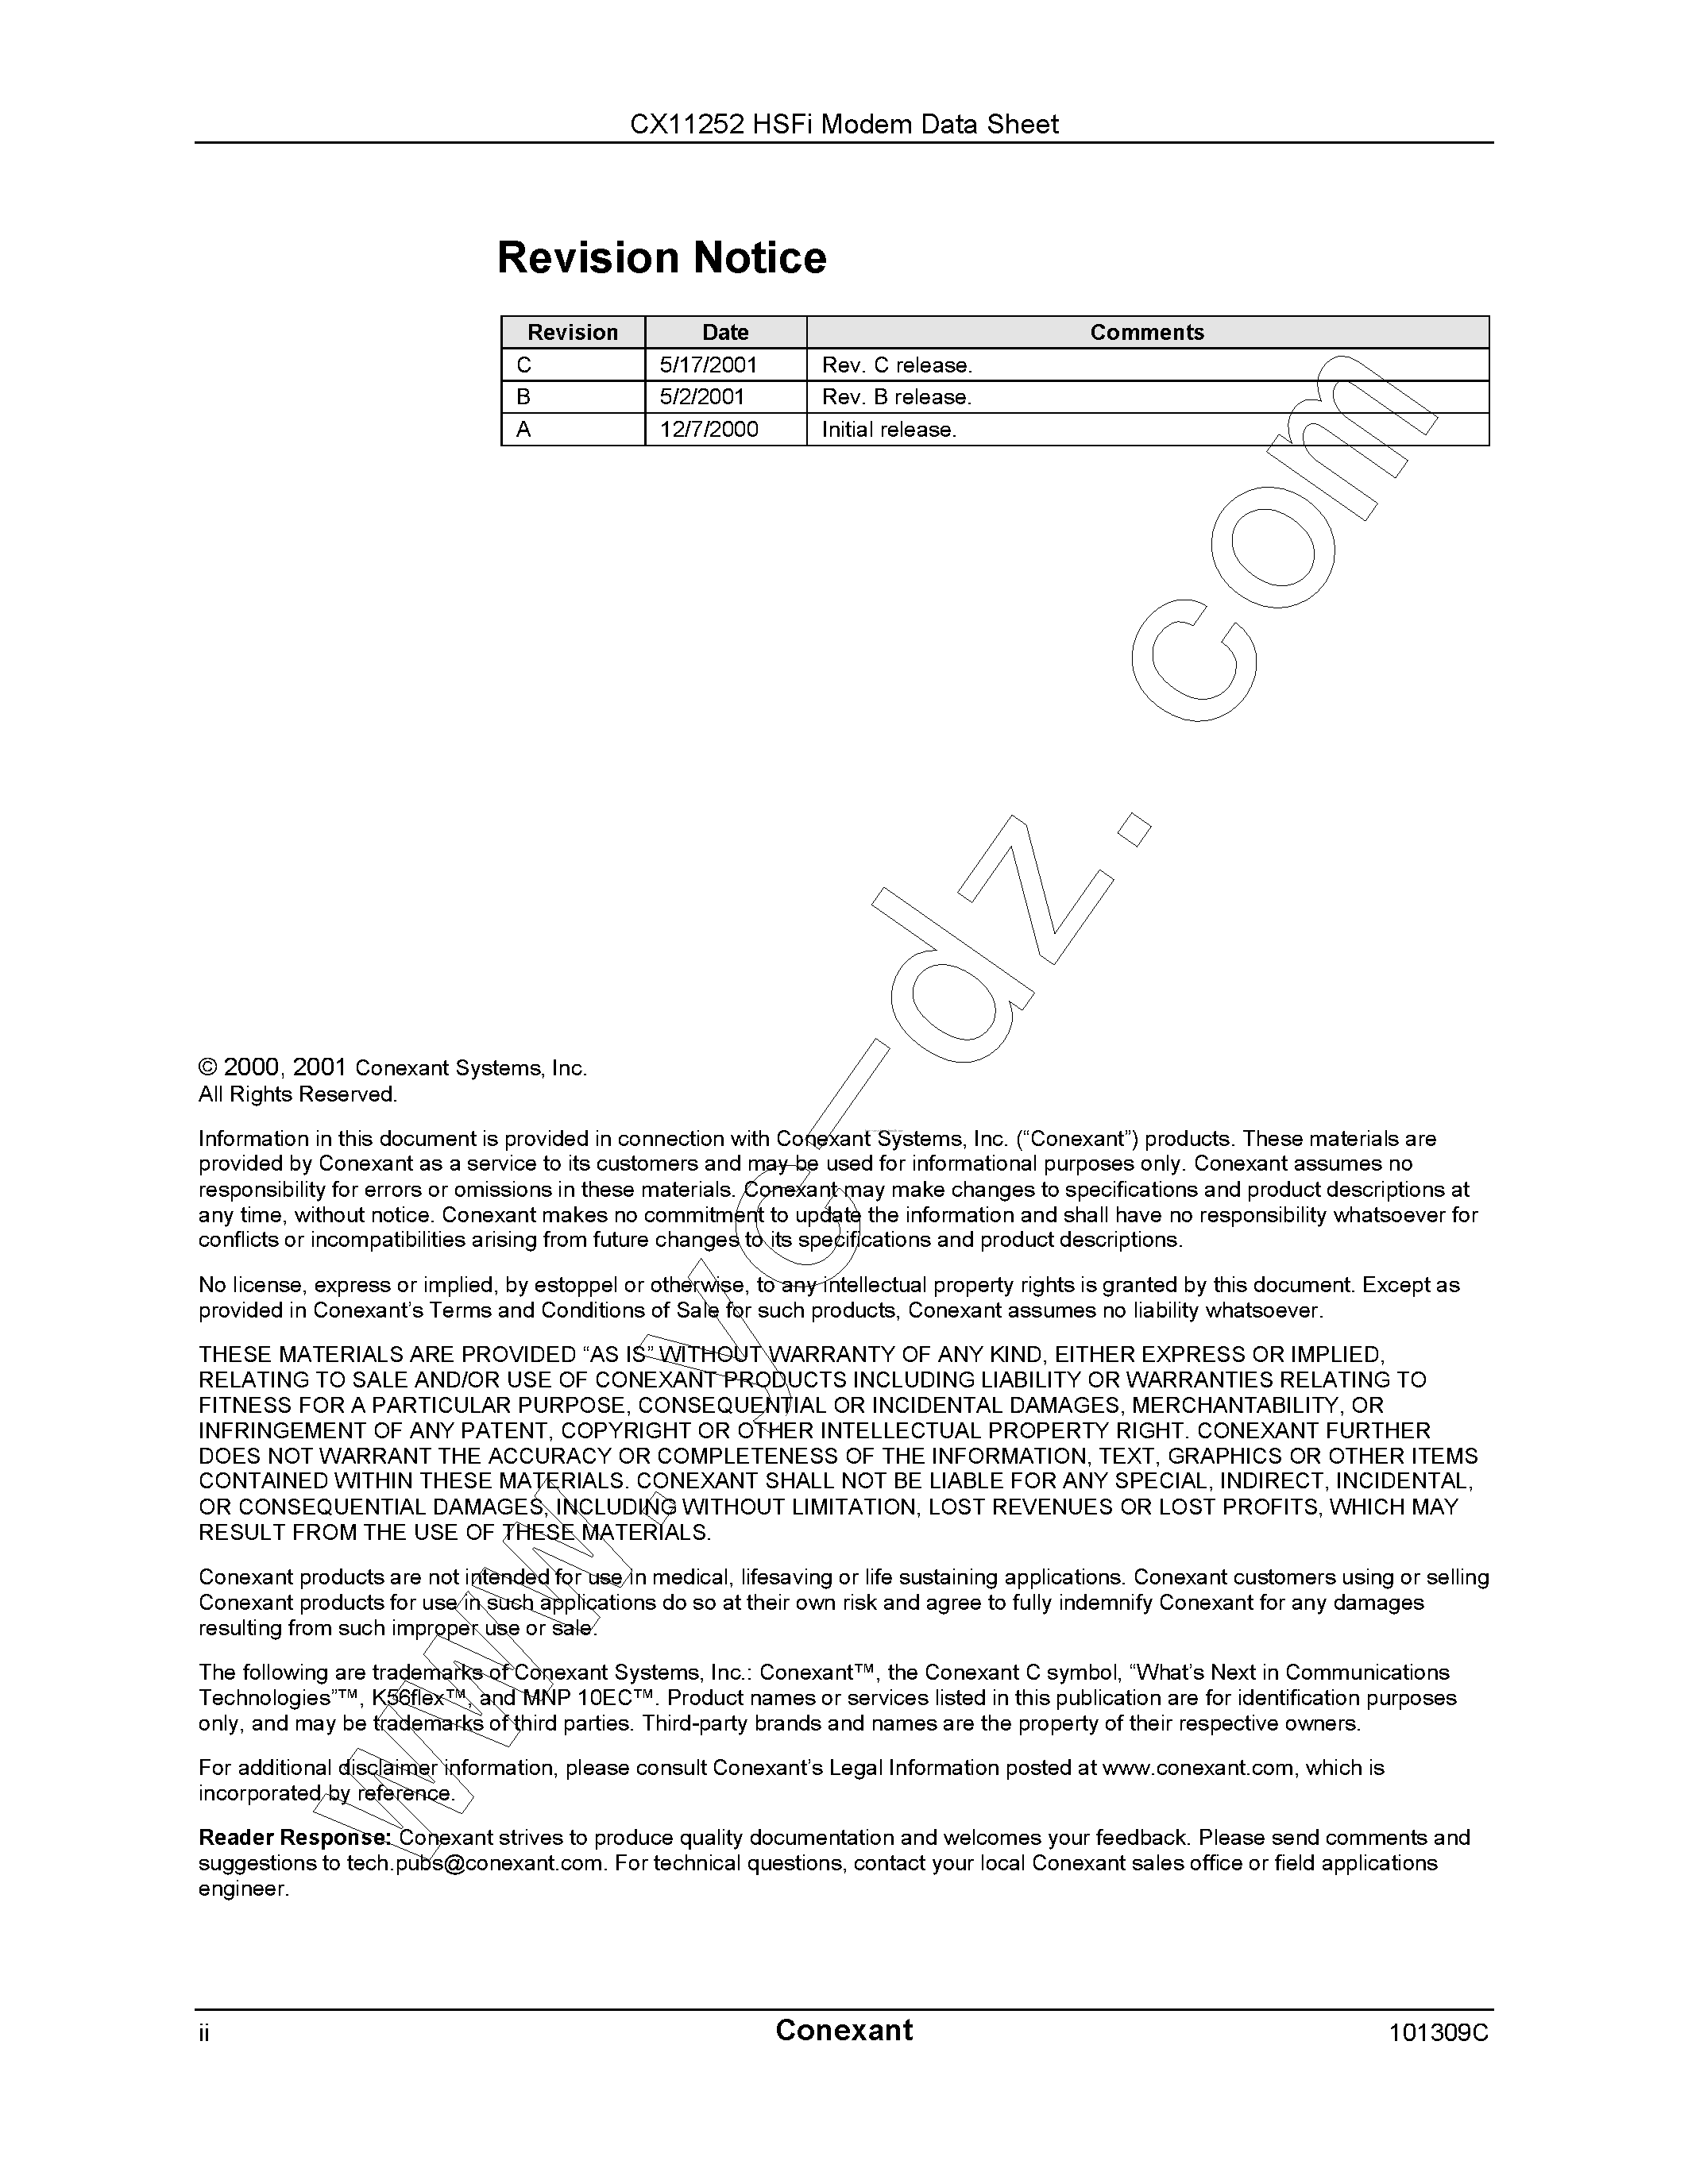 Datasheet CX11252 - page 2